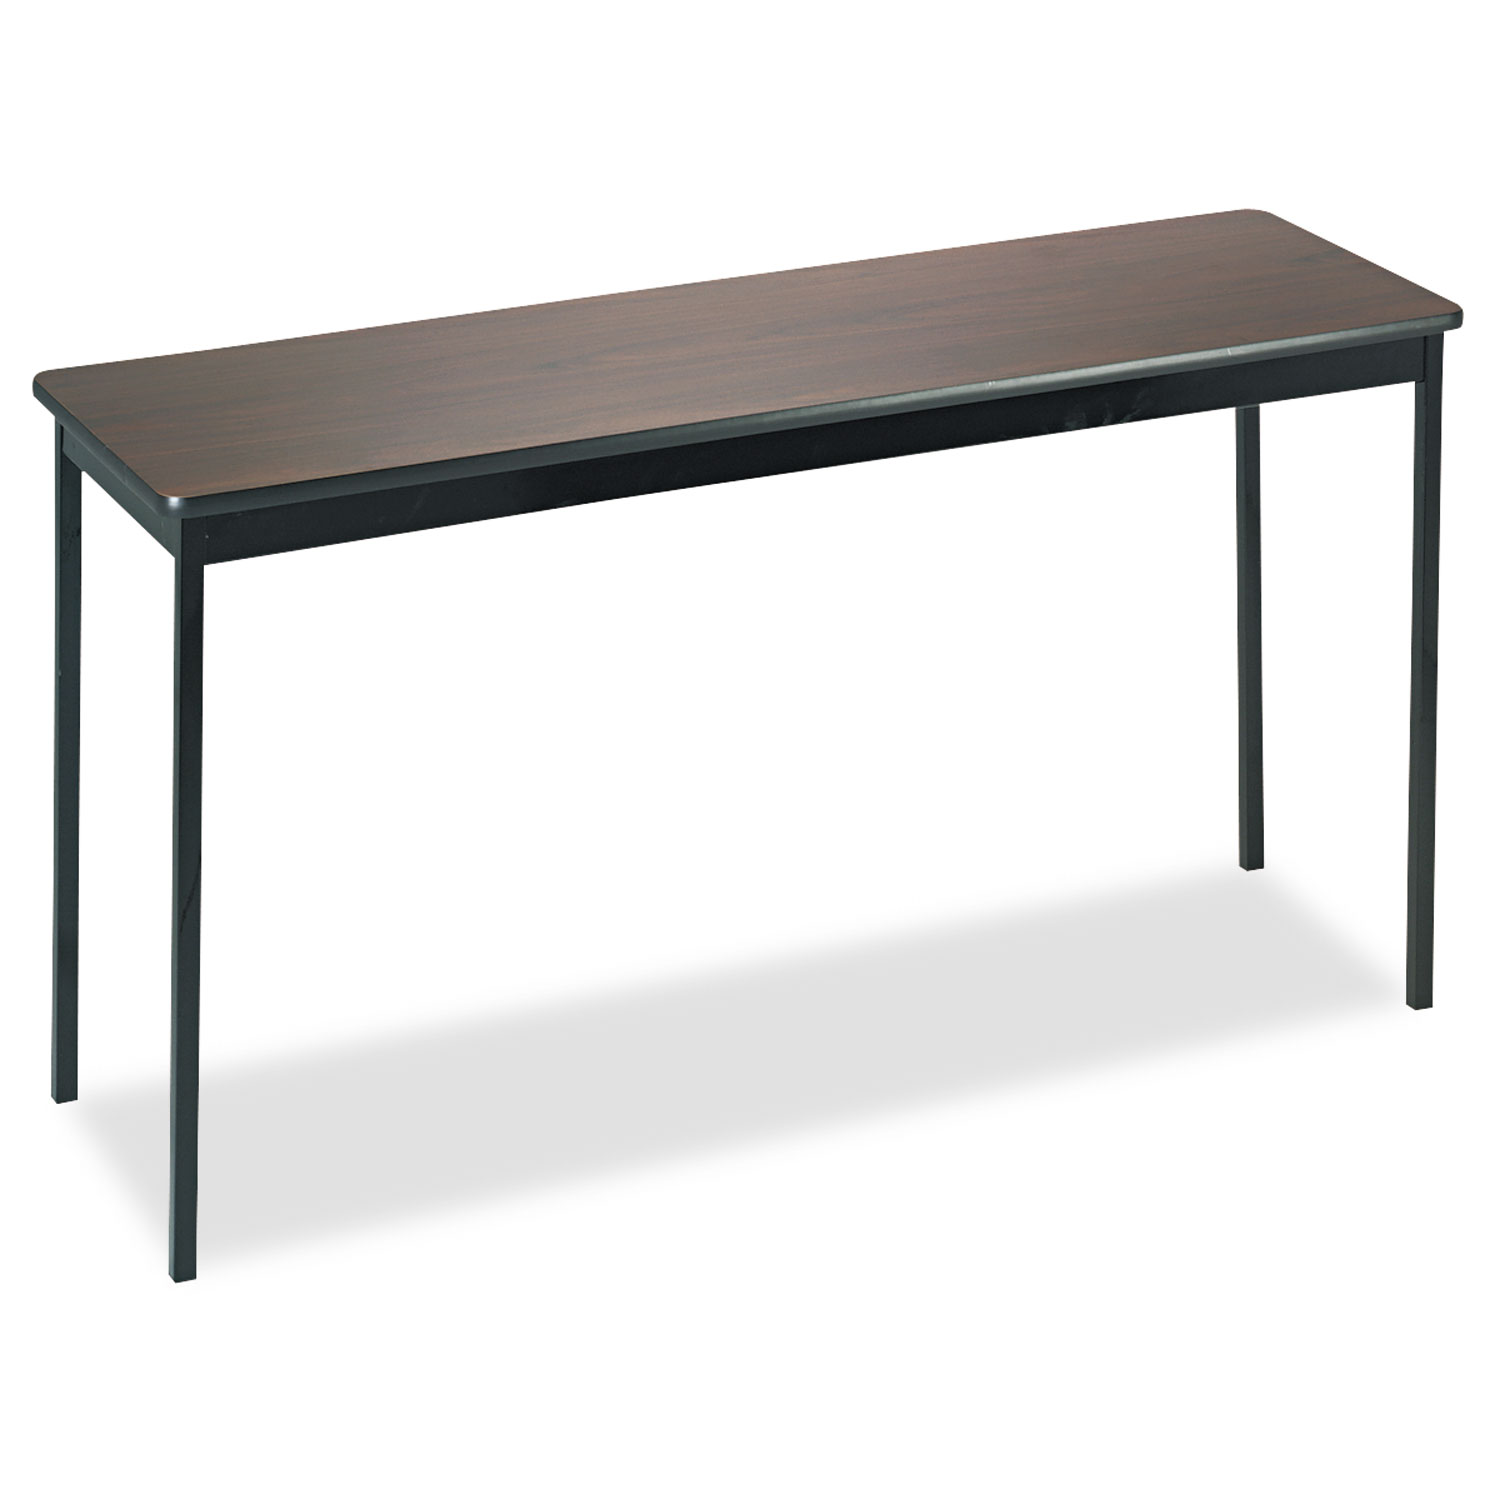  Barricks UT1860-WA Utility Table, Rectangular, 60w x 18d x 30h, Walnut/Black (BRKUT1860WA) 